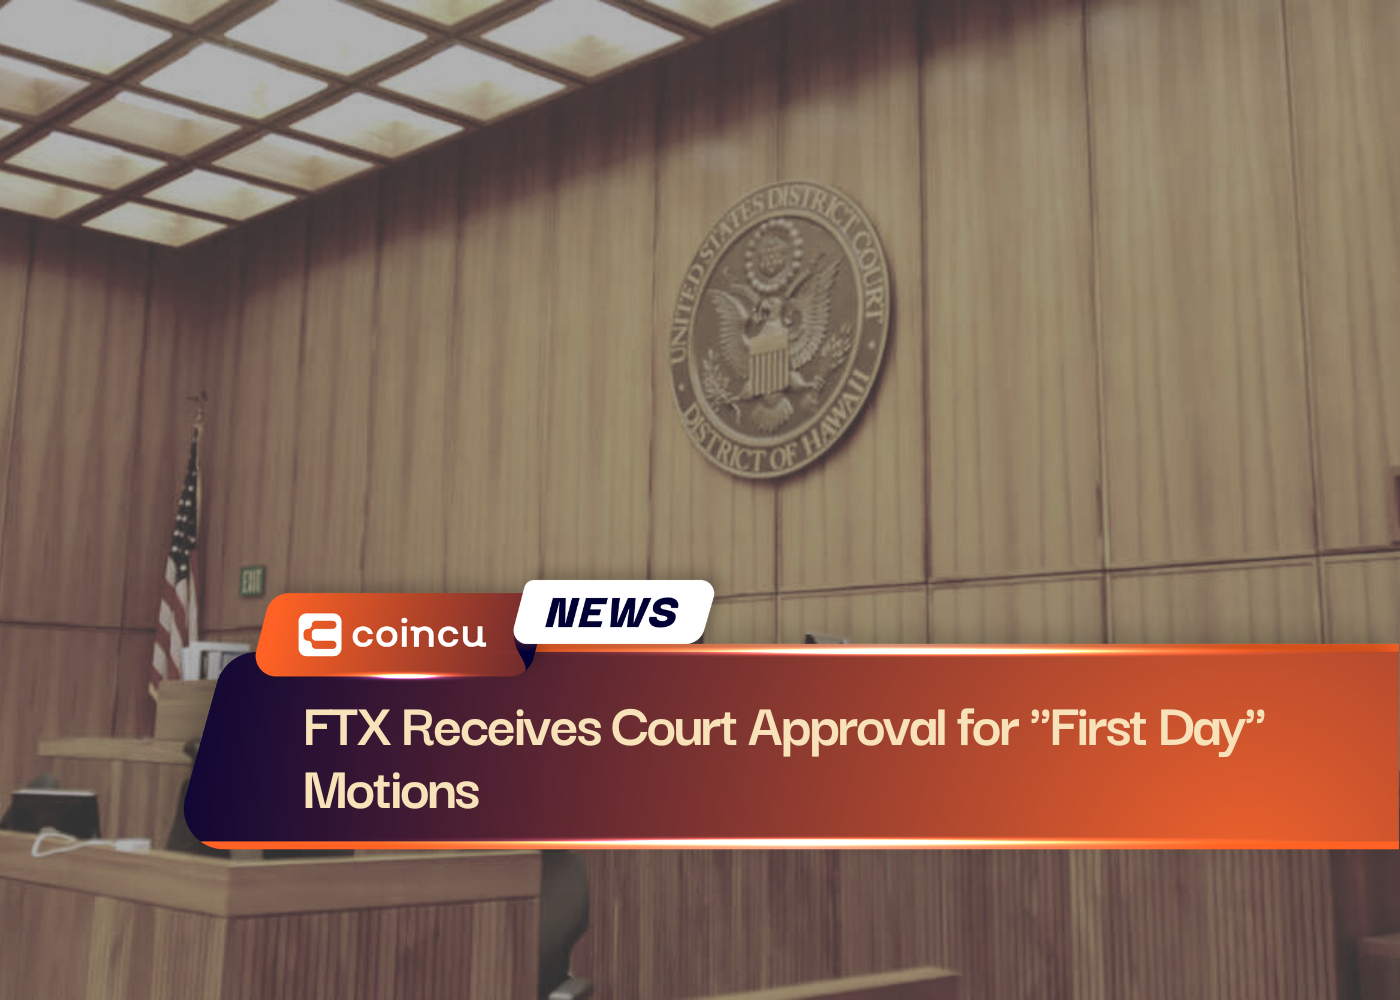 FTX nhận được sự chấp thuận của tòa án cho các chuyển động "Ngày đầu tiên"